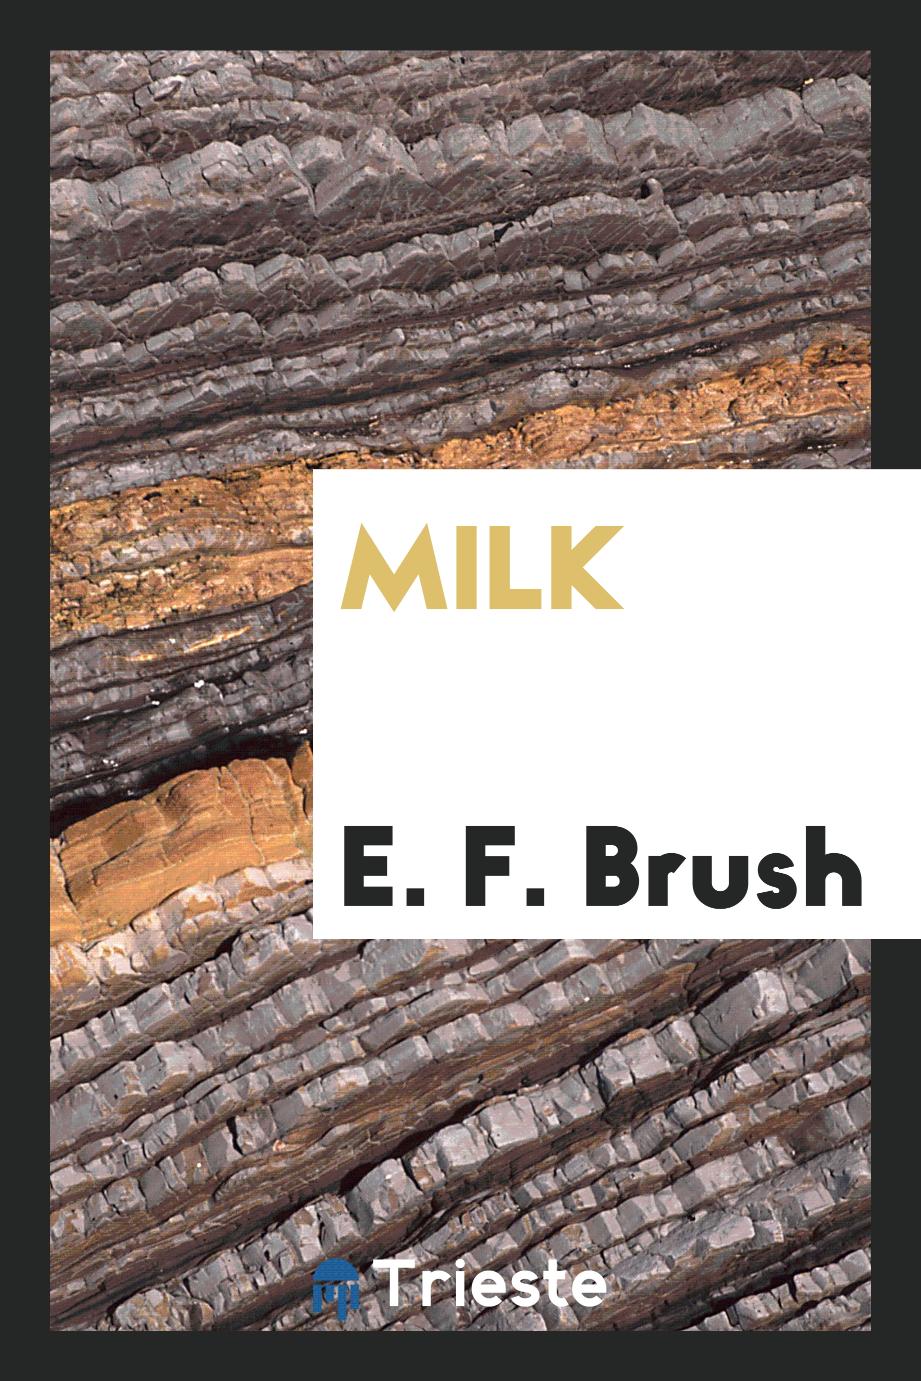 E. F. Brush - Milk